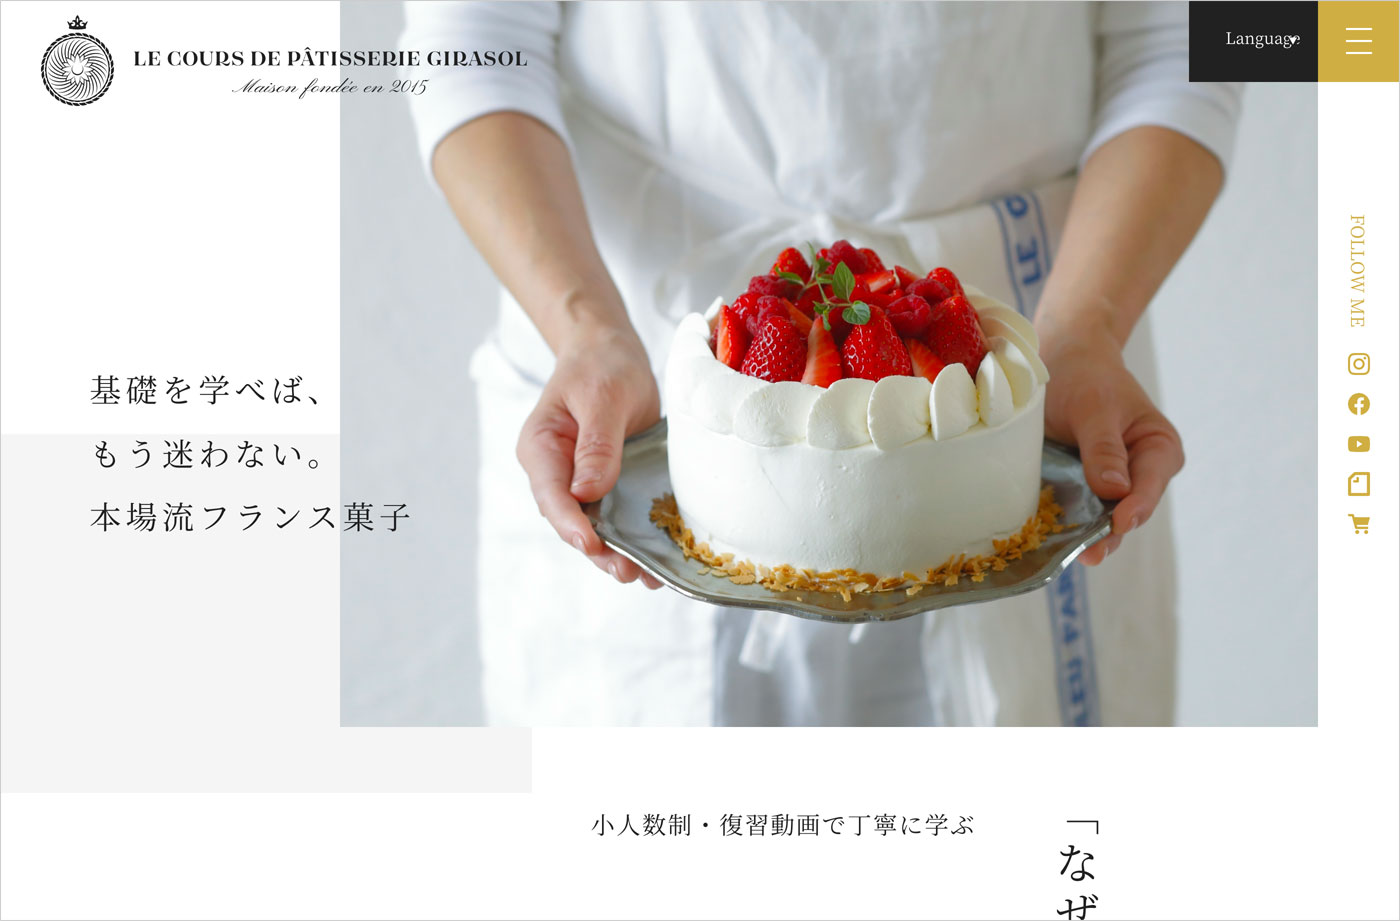 京都御所南｜フランス菓子教室girasol｜ヒラソルウェブサイトの画面キャプチャ画像